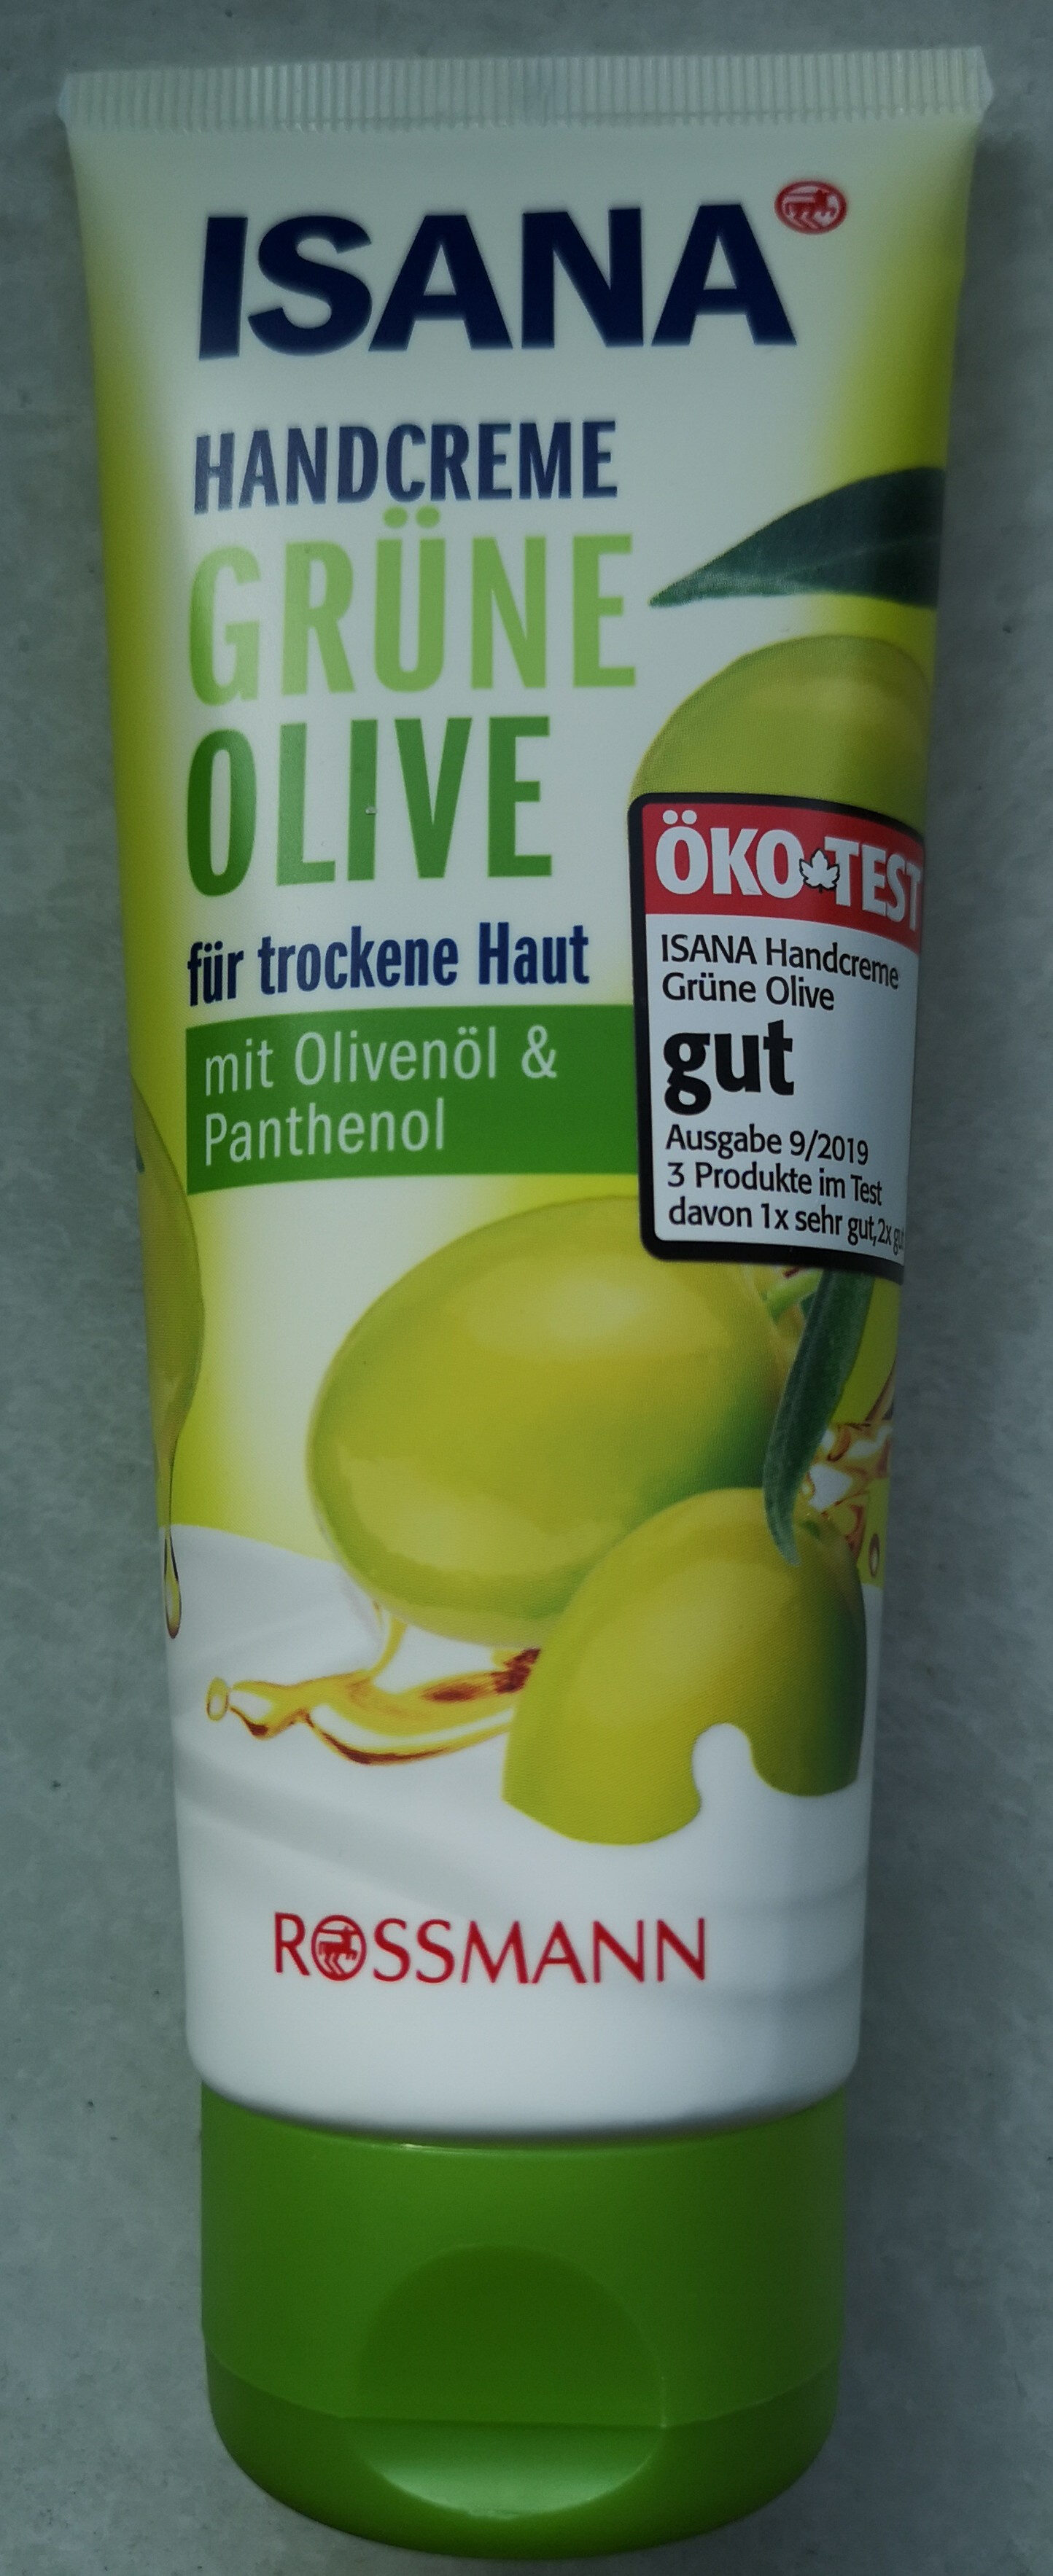 Handcreme Grüne Olive - Produit - de